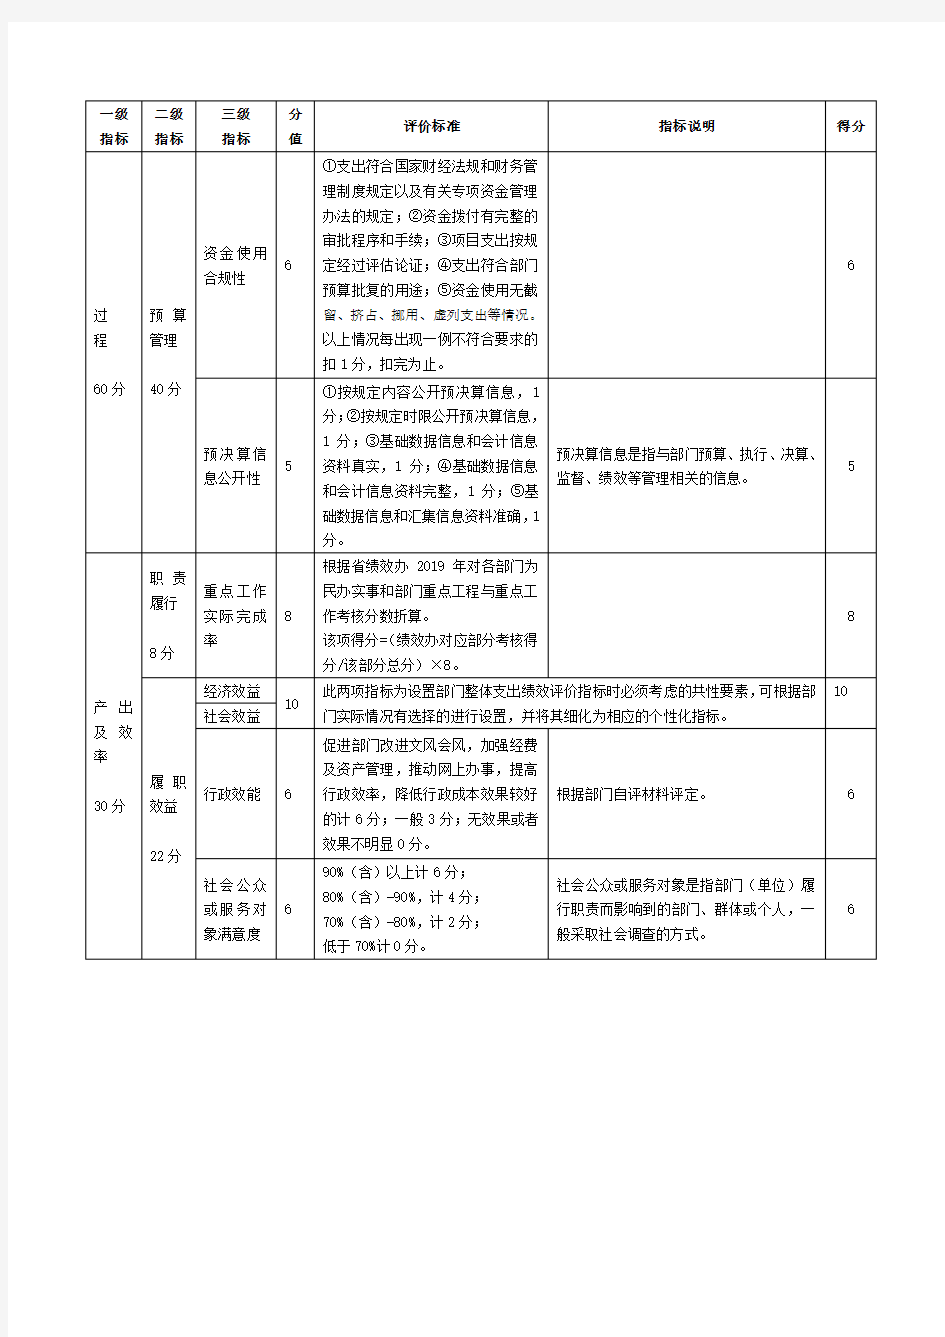 湖南省统计局部门整体支出绩效评价指标评分表、部门整体支出绩效评价基础数据表